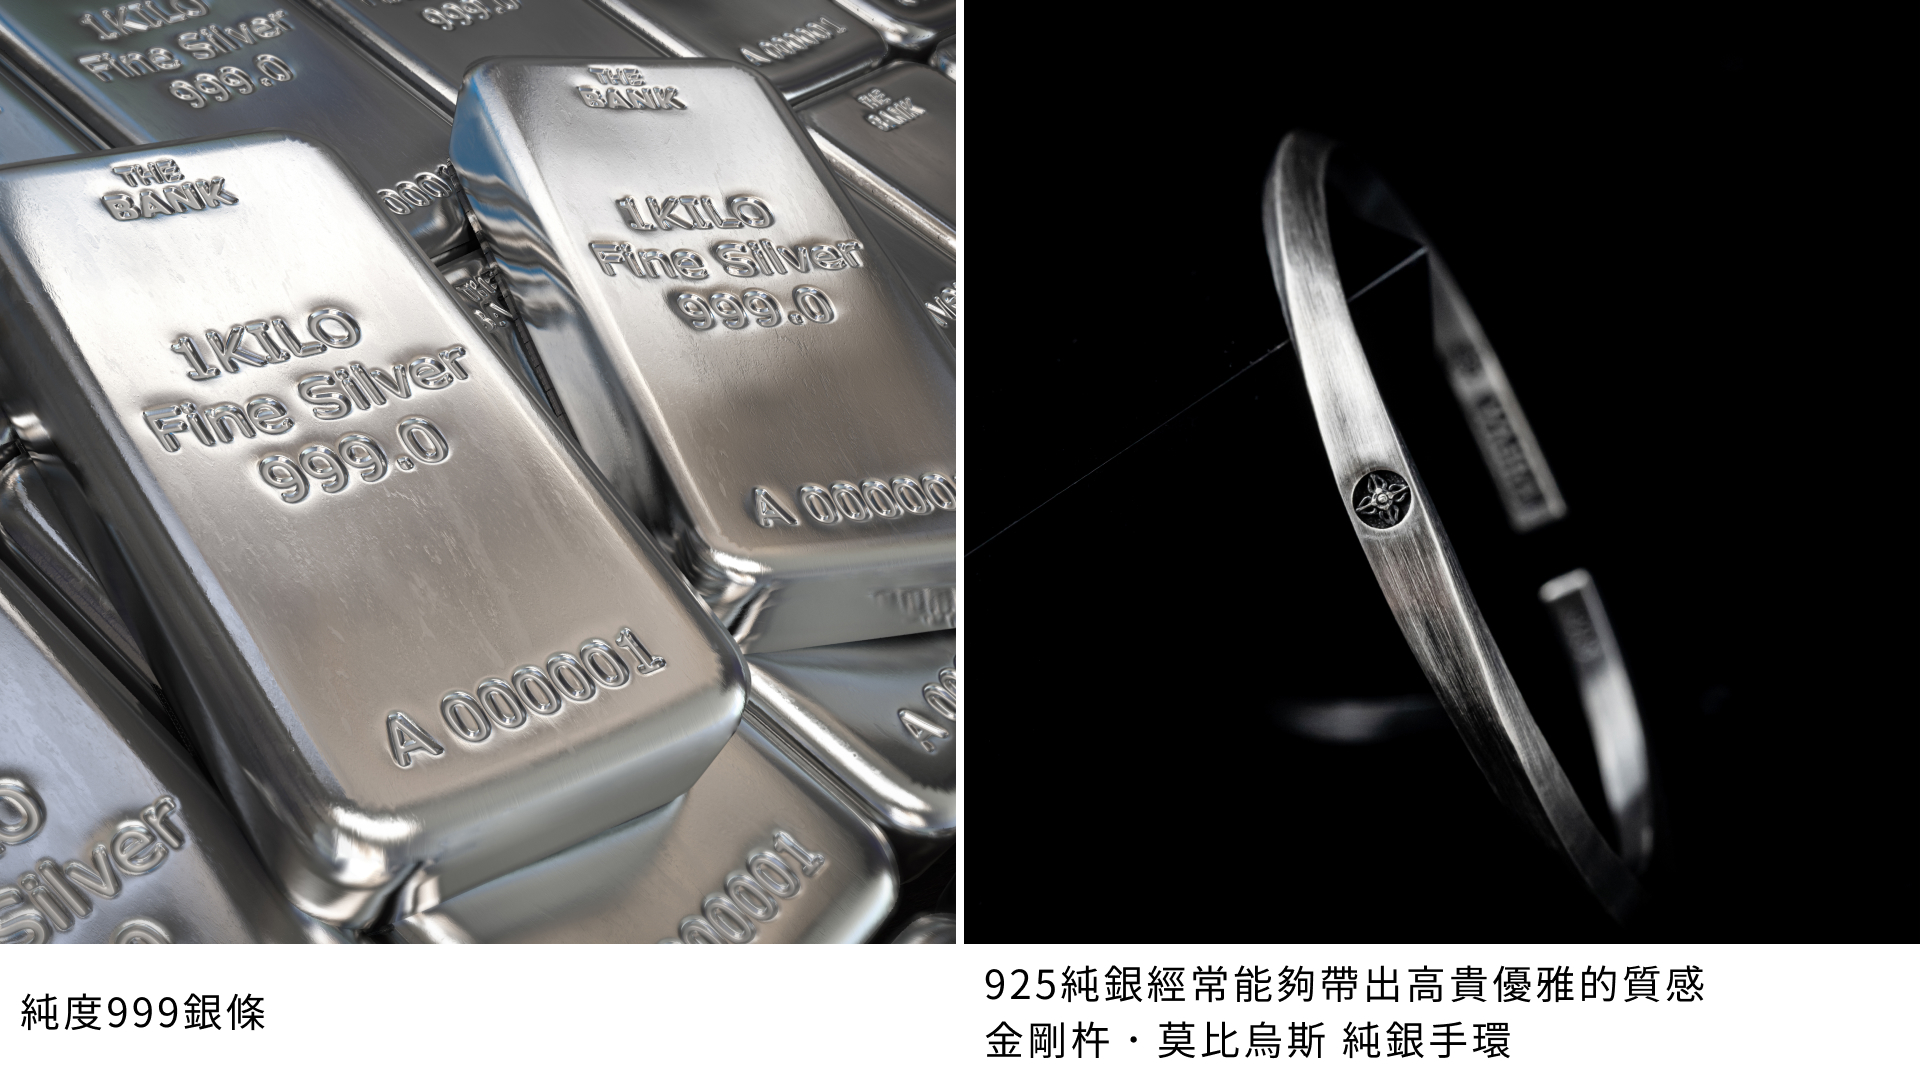 純度999銀條堆疊在一起，展示其高純度和光澤，適合投資和收藏；925純銀莫比烏斯手環，在黑色背景下展示其高貴優雅的設計和質感